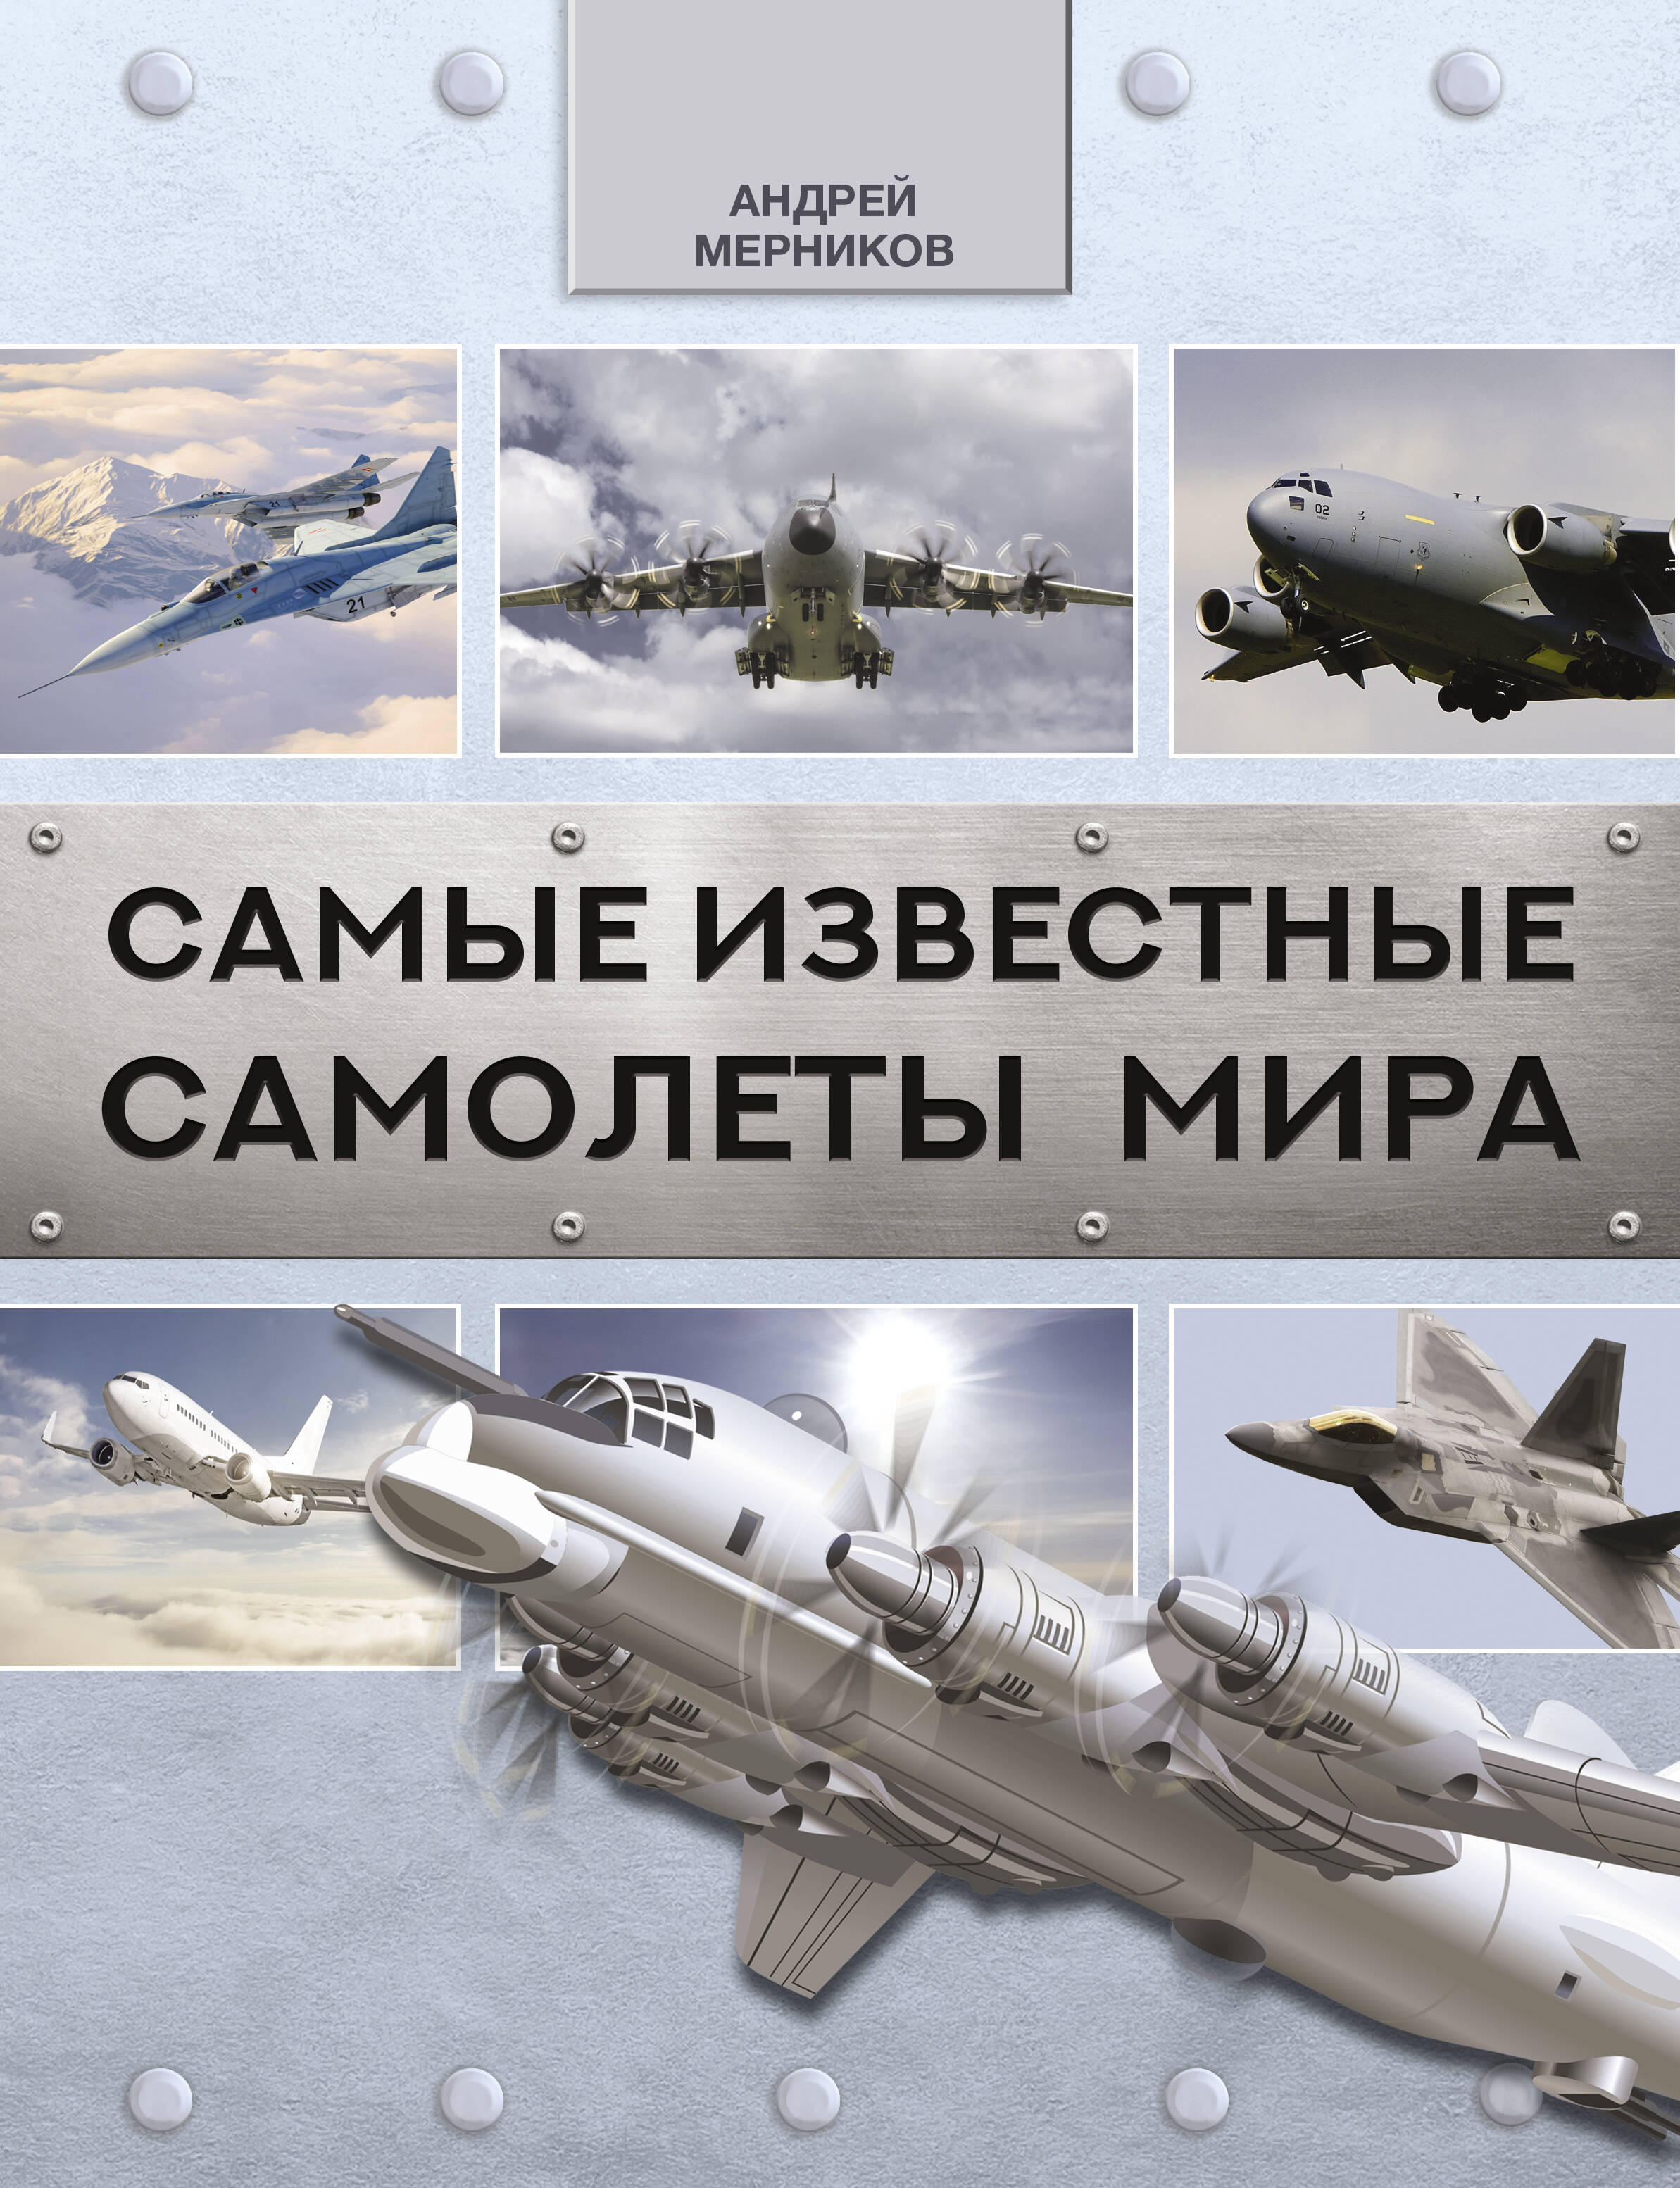 Мерников Андрей Геннадьевич Самые известные самолеты мира - страница 0